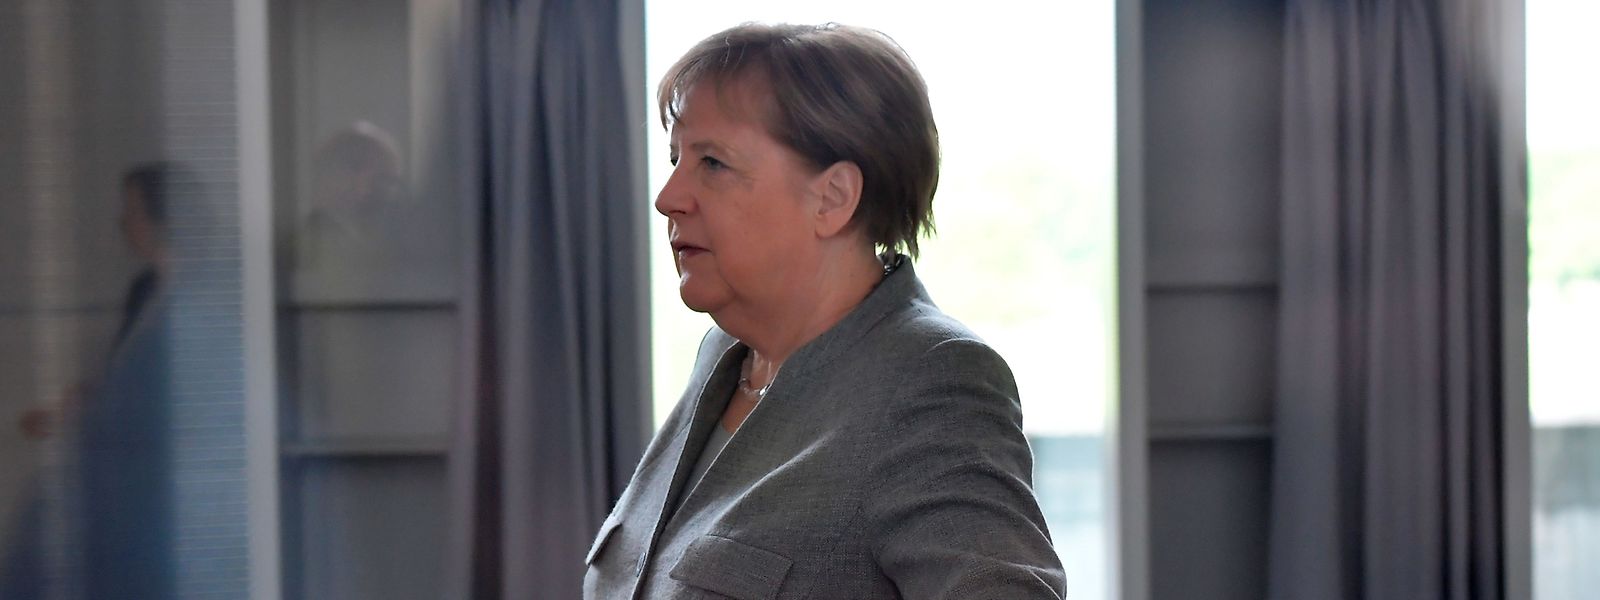 Le gouvernement d'Angela Merkel s'apprête à subir quelques turbulences